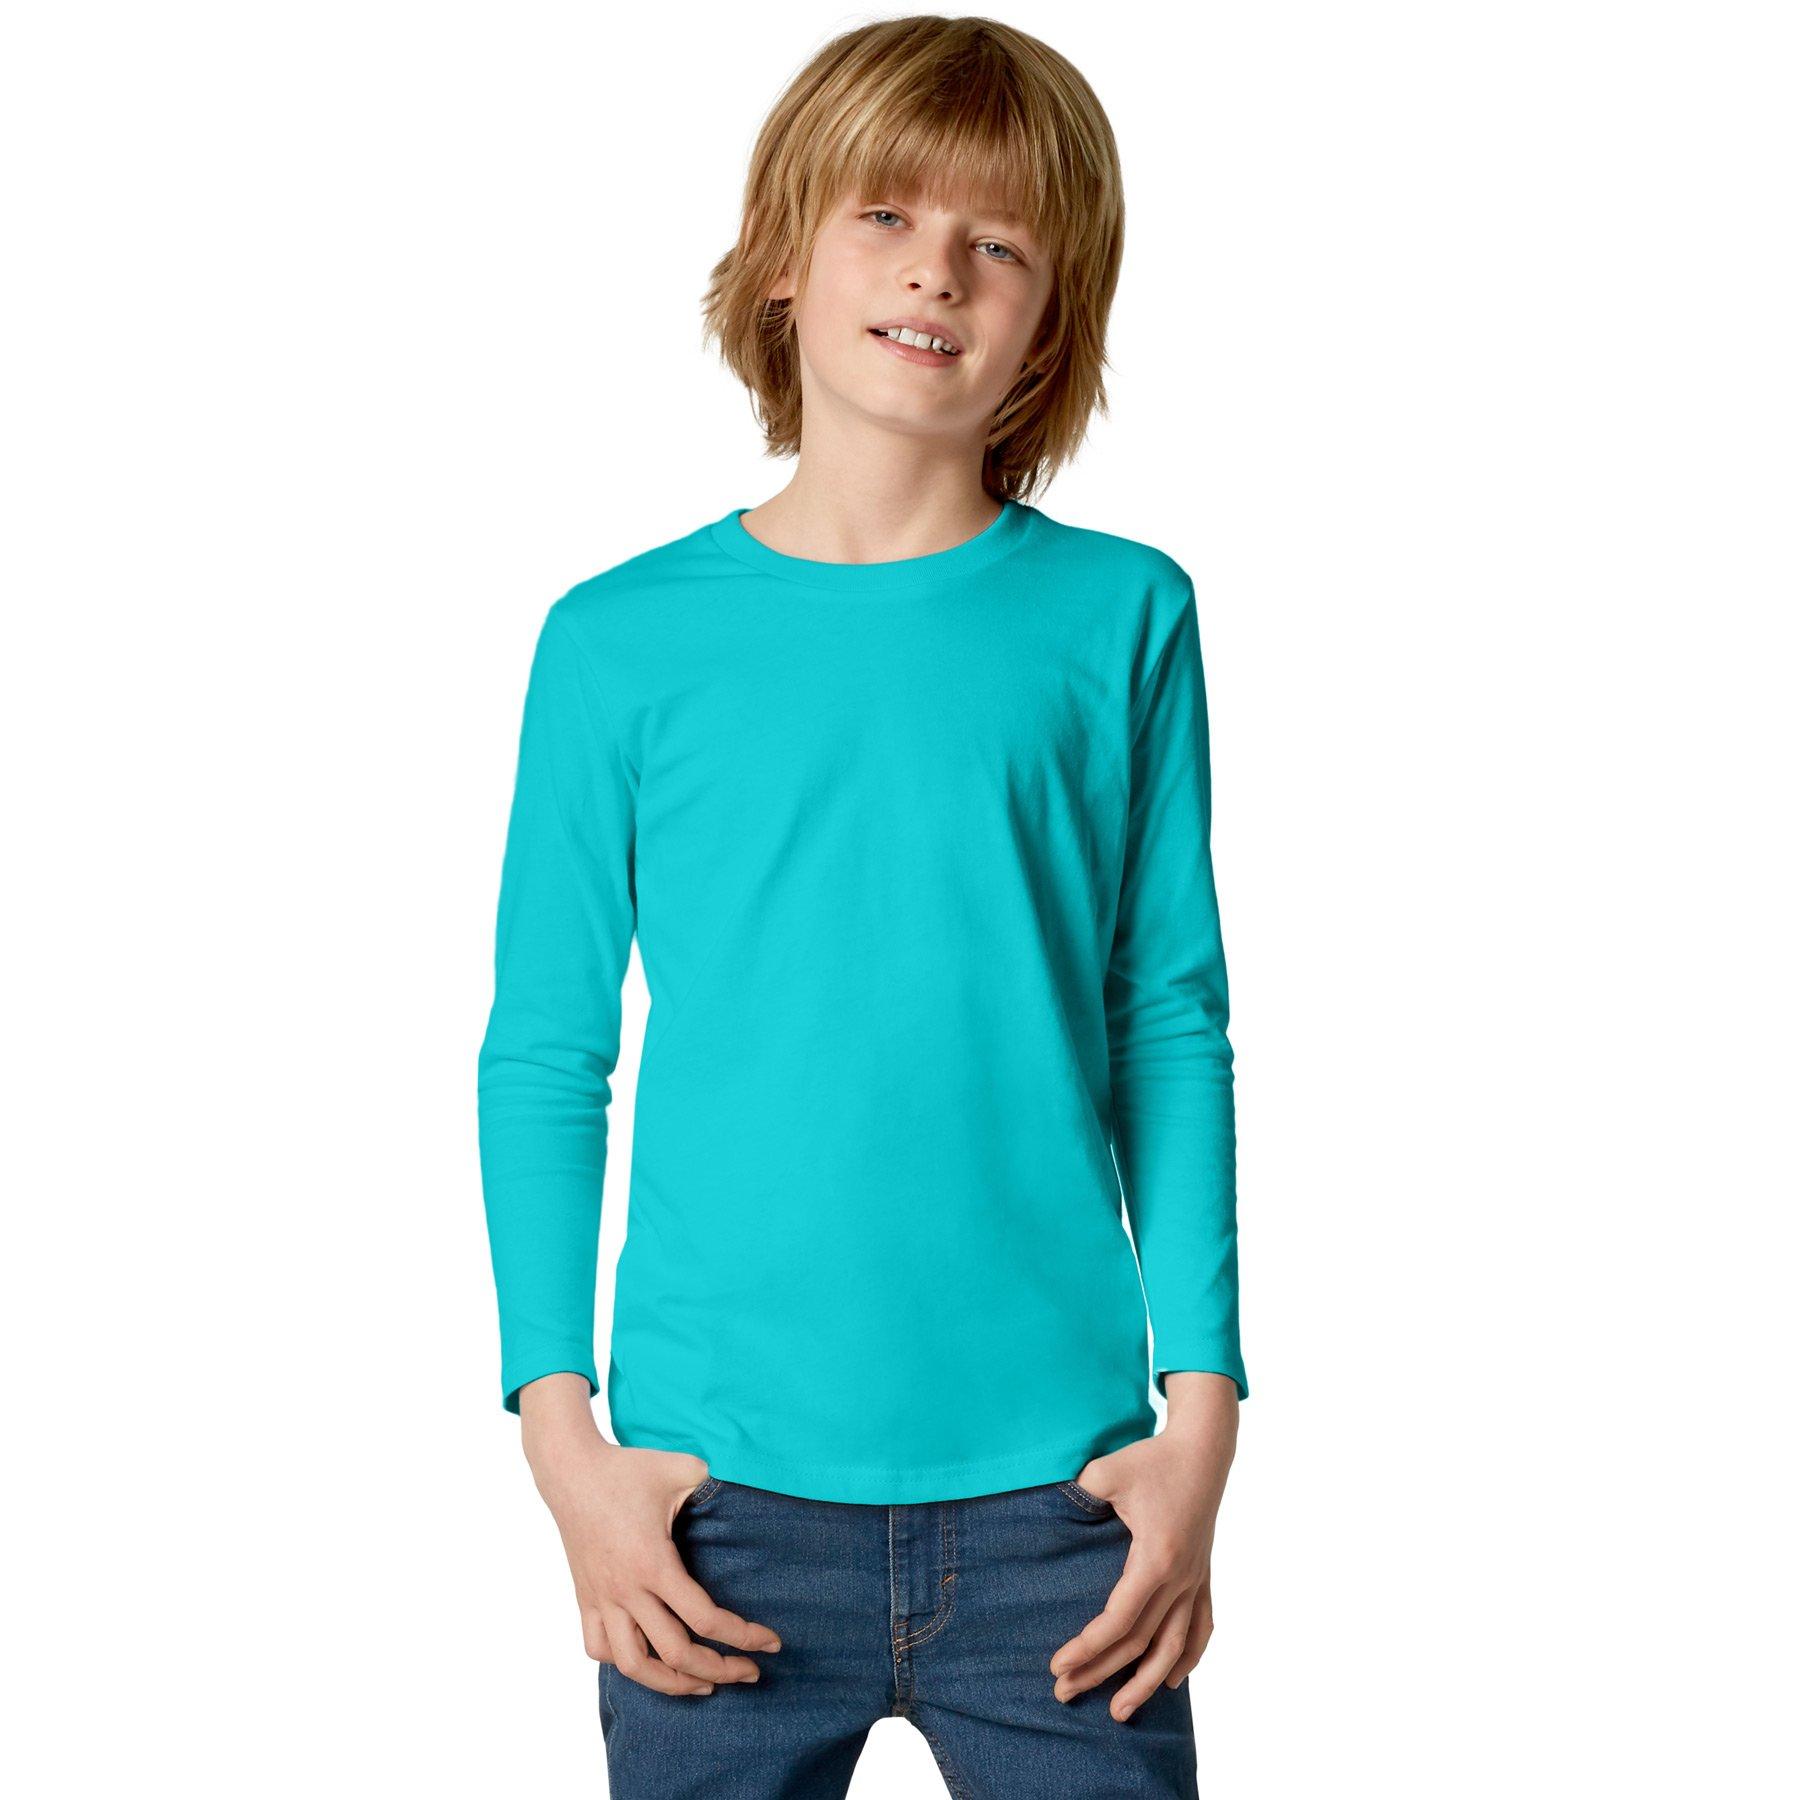 Langarm-shirt Kinder Jungen Türkisblau 140 von Tectake